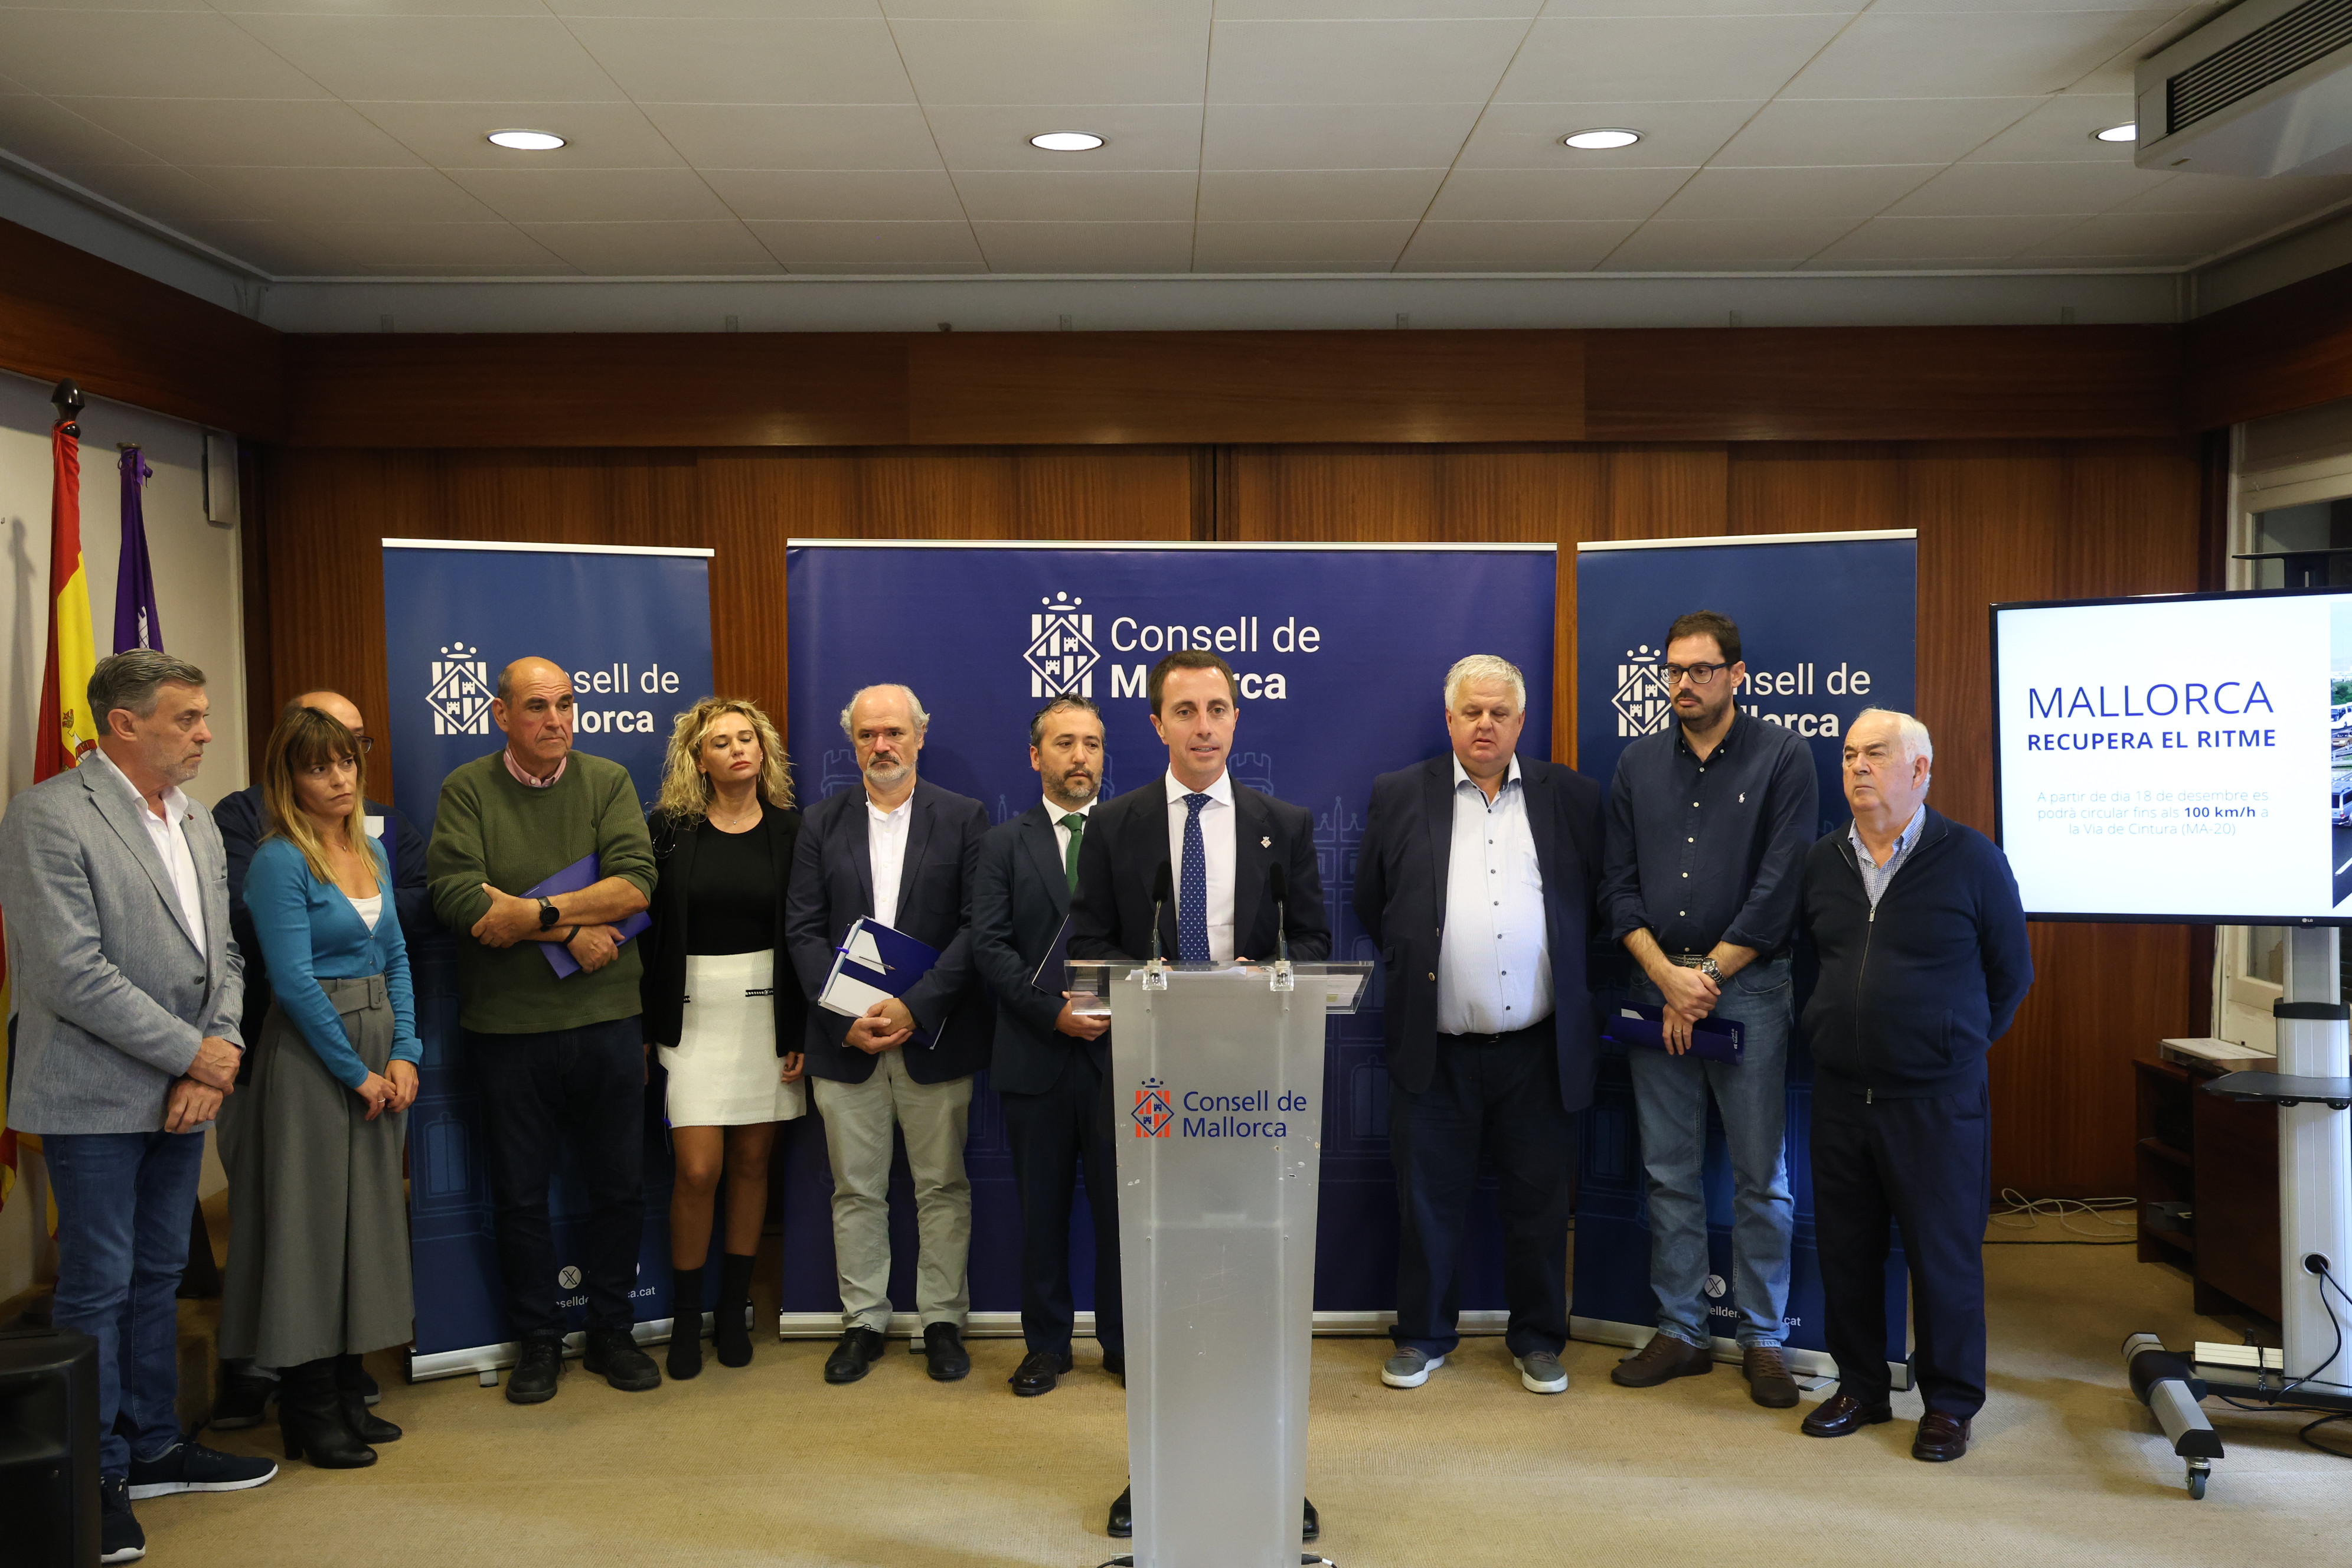 El presidente del Consell, Llorenç Galmés, durante la rueda de premsa donde recibió el apoyo del sector del tranporte.